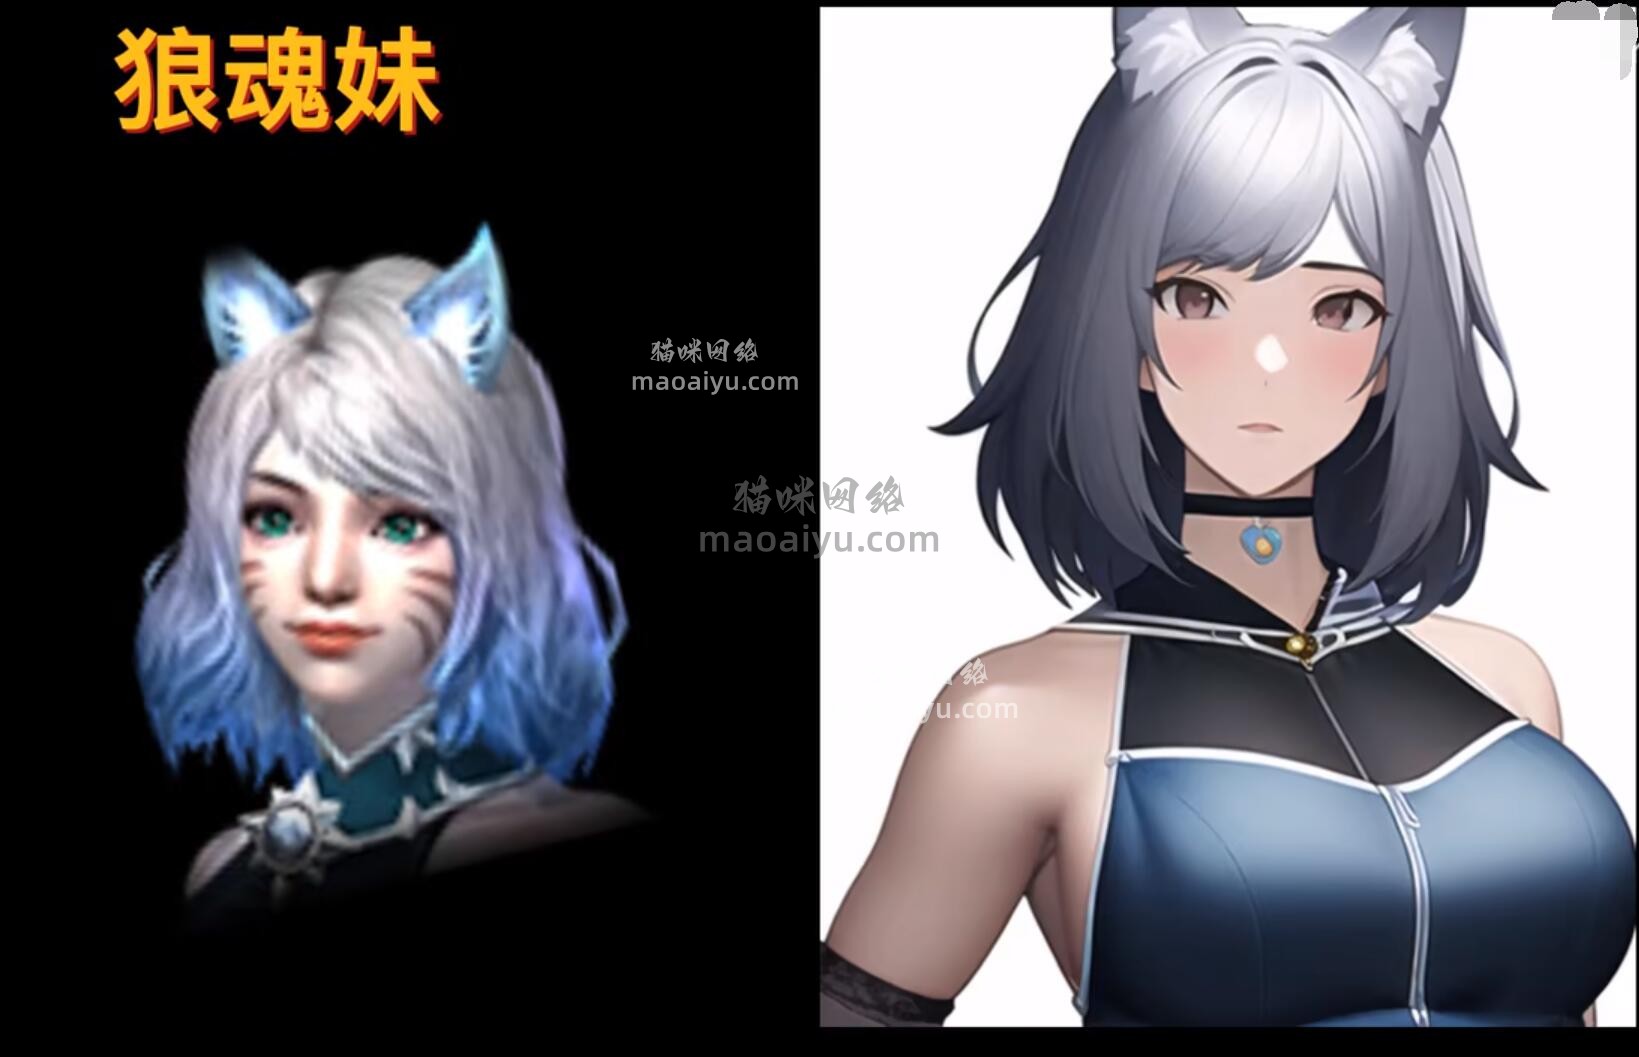 《CSOL》手绘游戏人物角色狼魂娜塔莉亚-猫咪网络